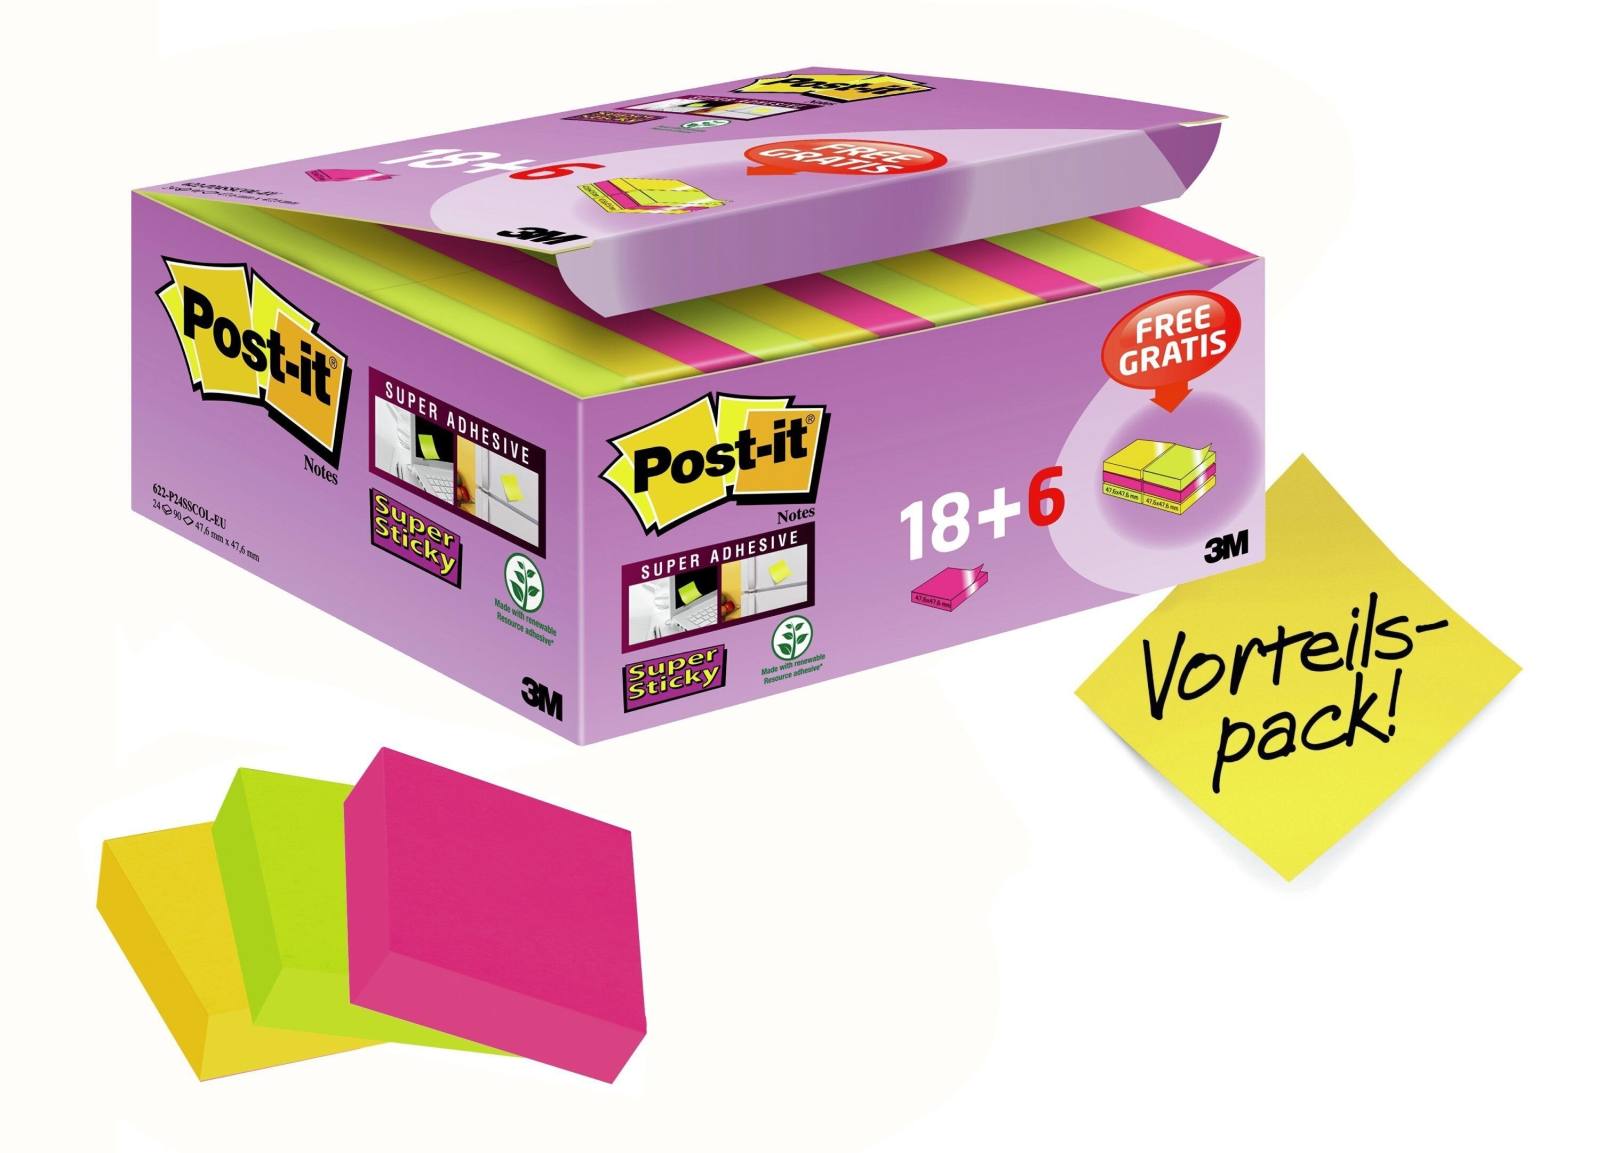 3M Post-it Super Sticky Notes Promotion 622P24SC, 24 Blöcke à 90 Blatt im Karton zum Vorteilspreis, ultrapink, -gelb, neongrün, 48 mm x 48 mm, nicht einzeln cellophaniert, PEFC zertifiziert